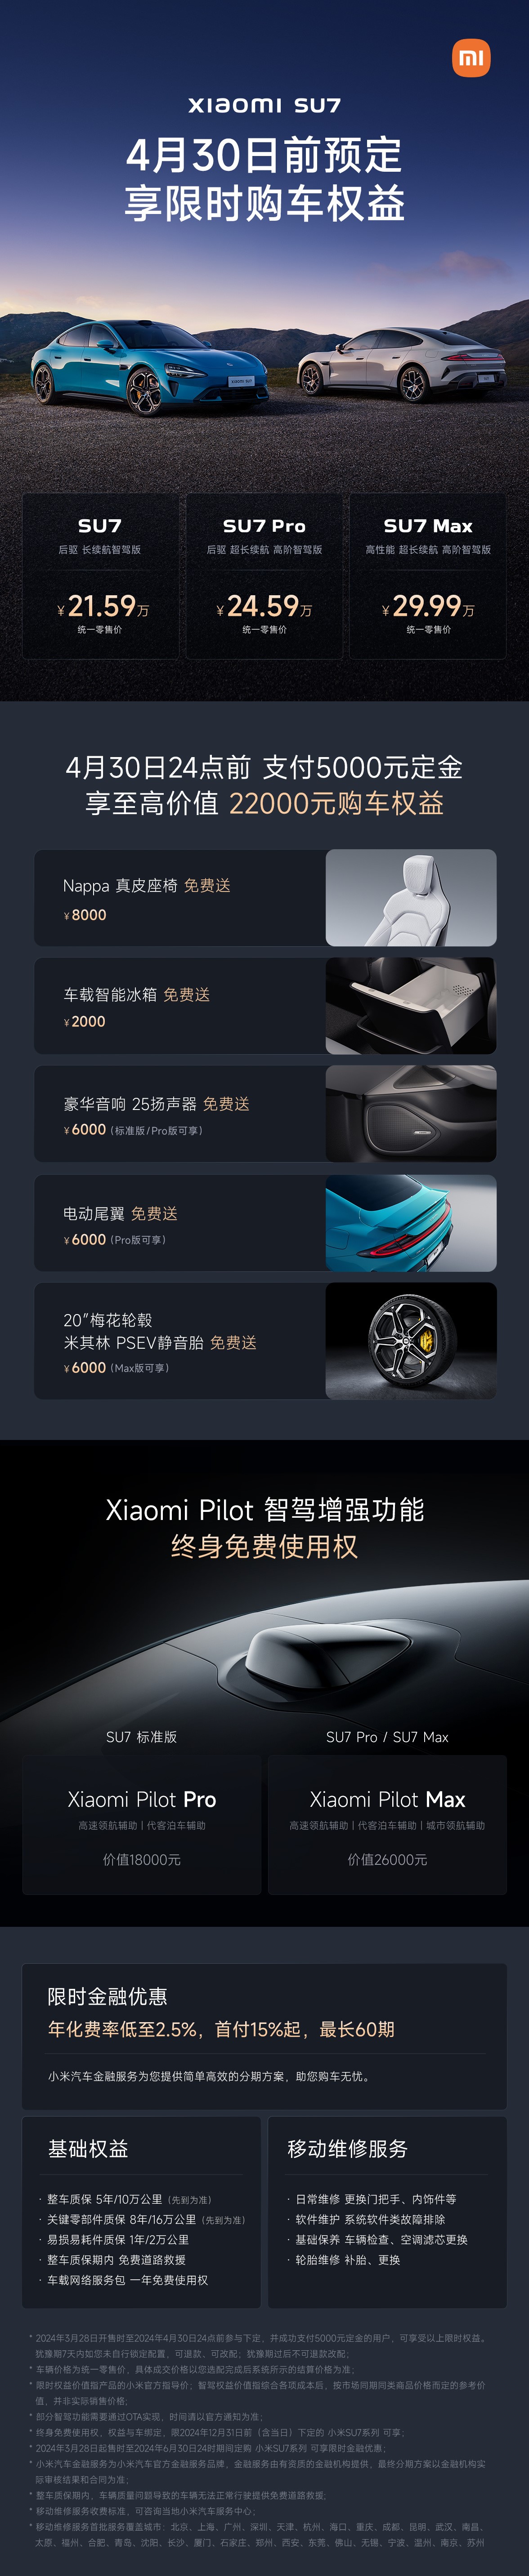 小米SU7正式上市 售价21.59-29.99万元